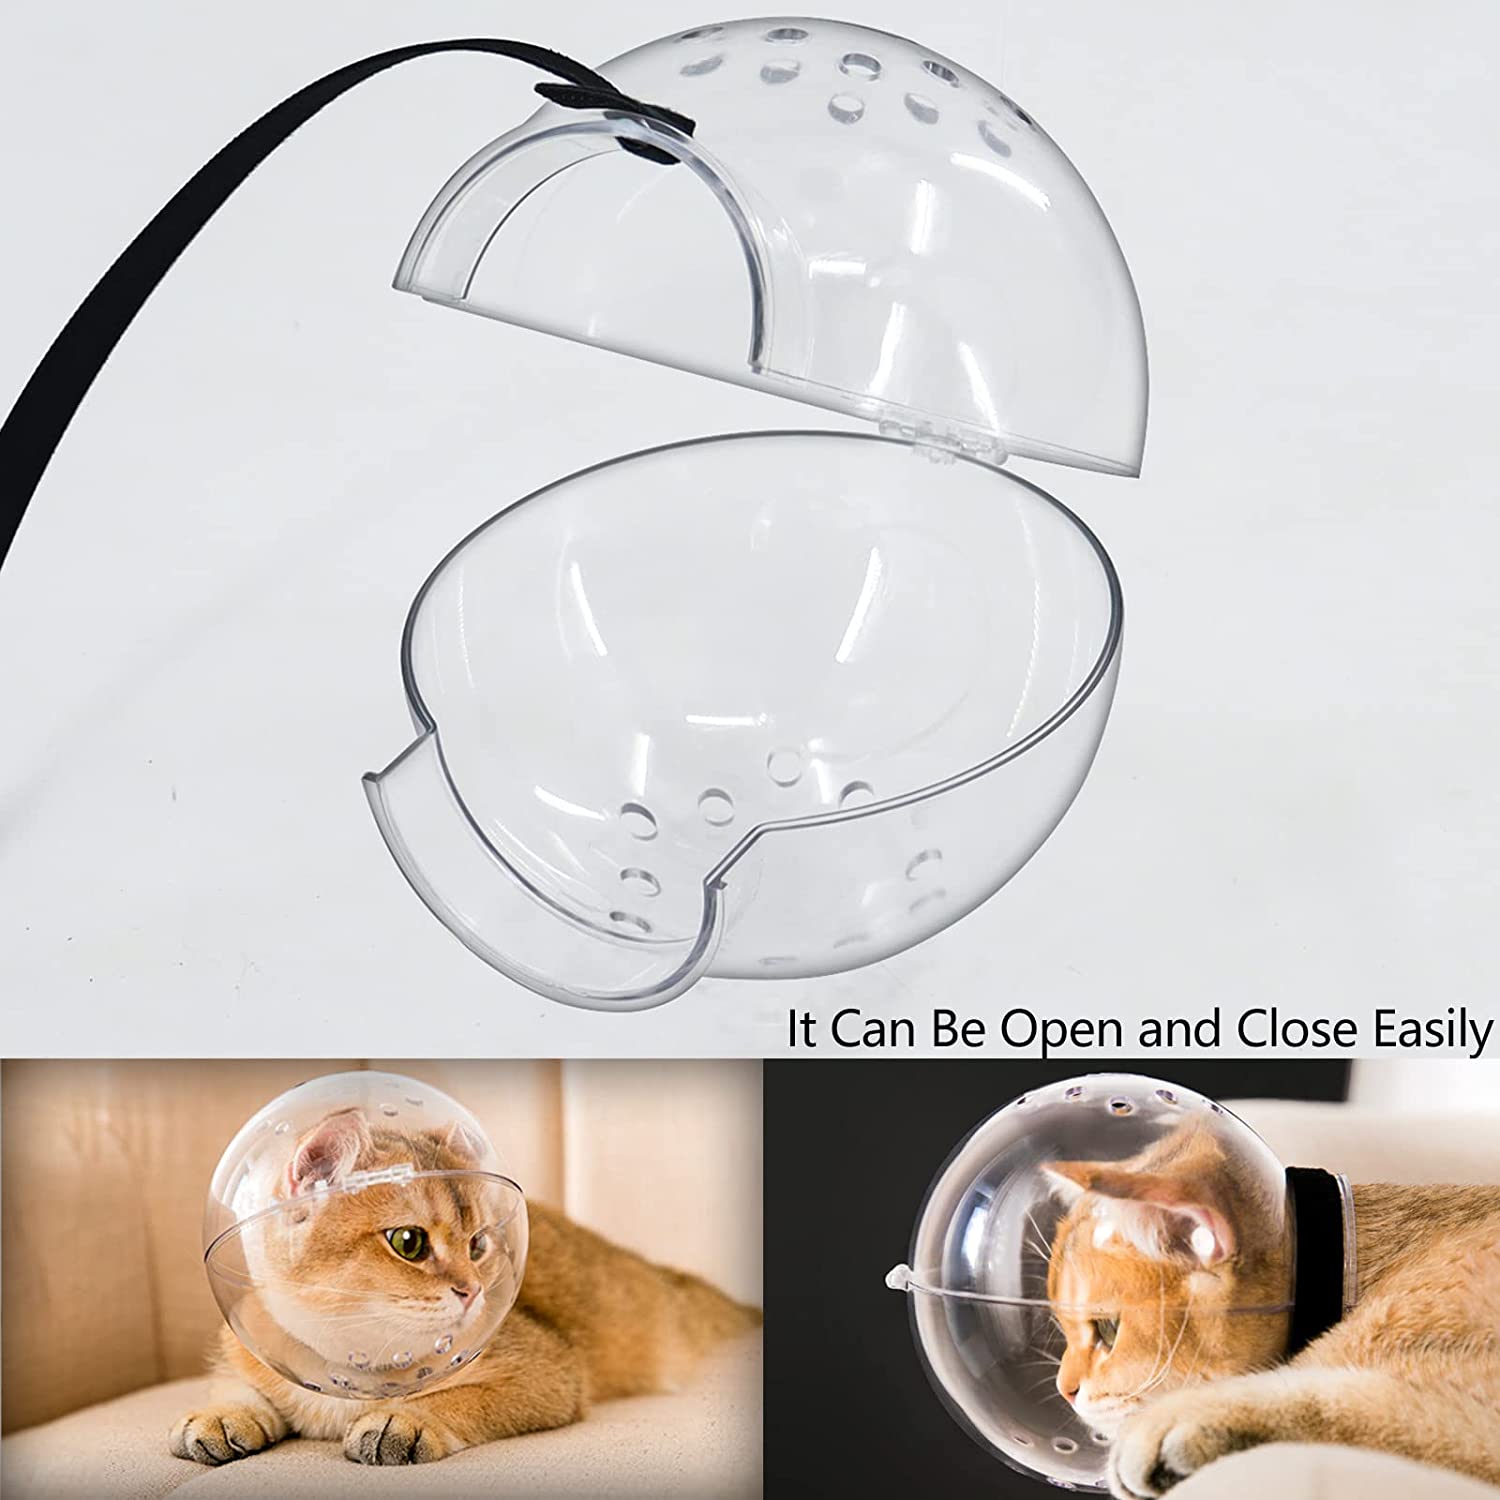 این ماسک صورت نظافت حیوانات خانگی به شکل گرد با قلاب و حلقه برای استفاده آسان و راحت طراحی شده است